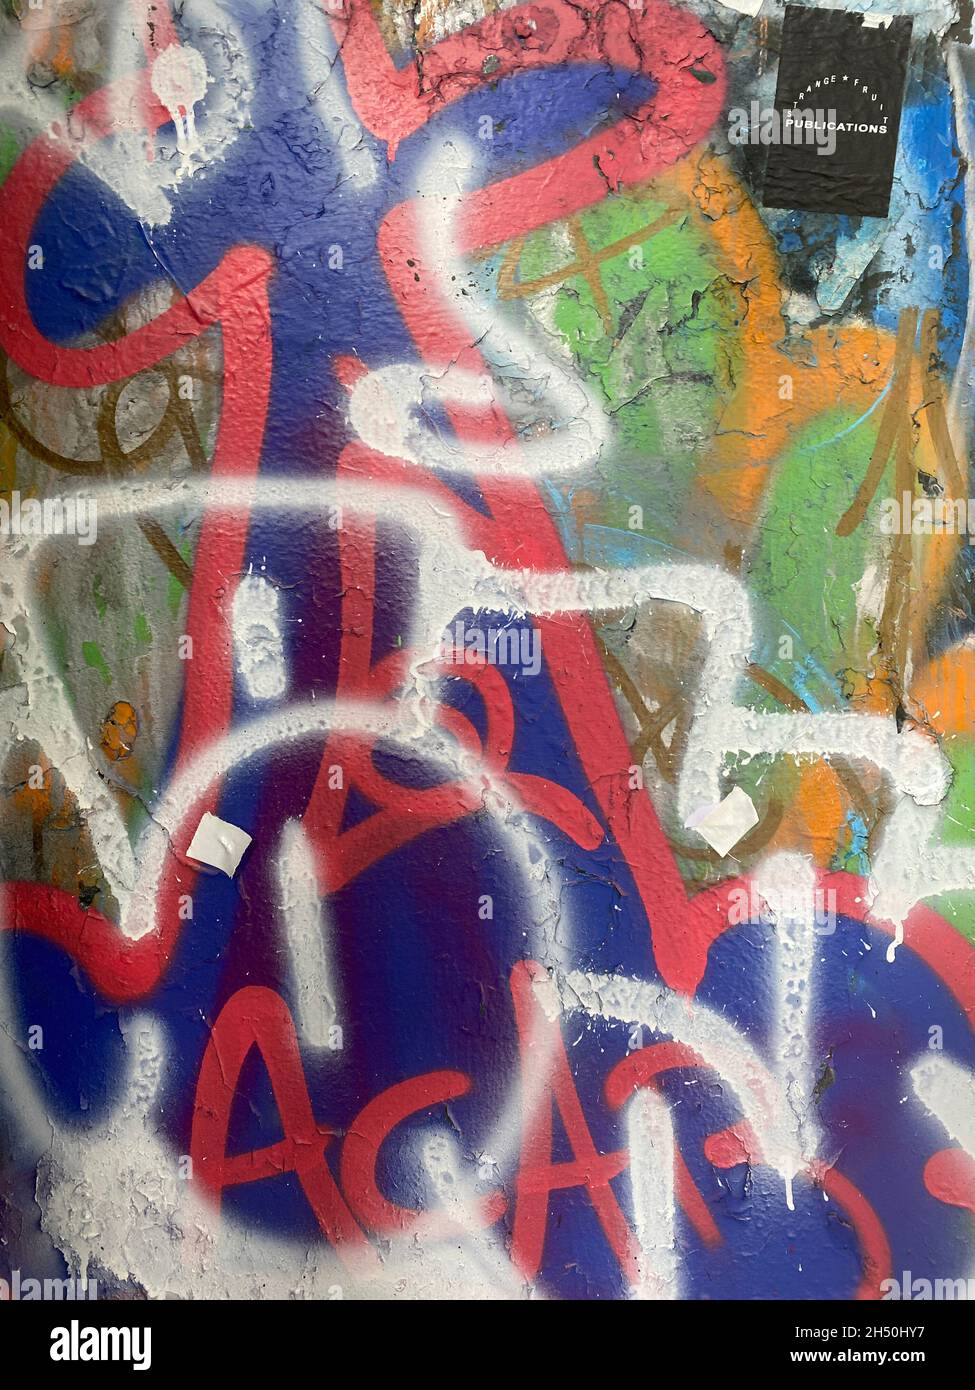 Signo de graffiti dibujadas a mano con rotuladores. Arte urbano por Chloe  Stock Fotografía de stock - Alamy